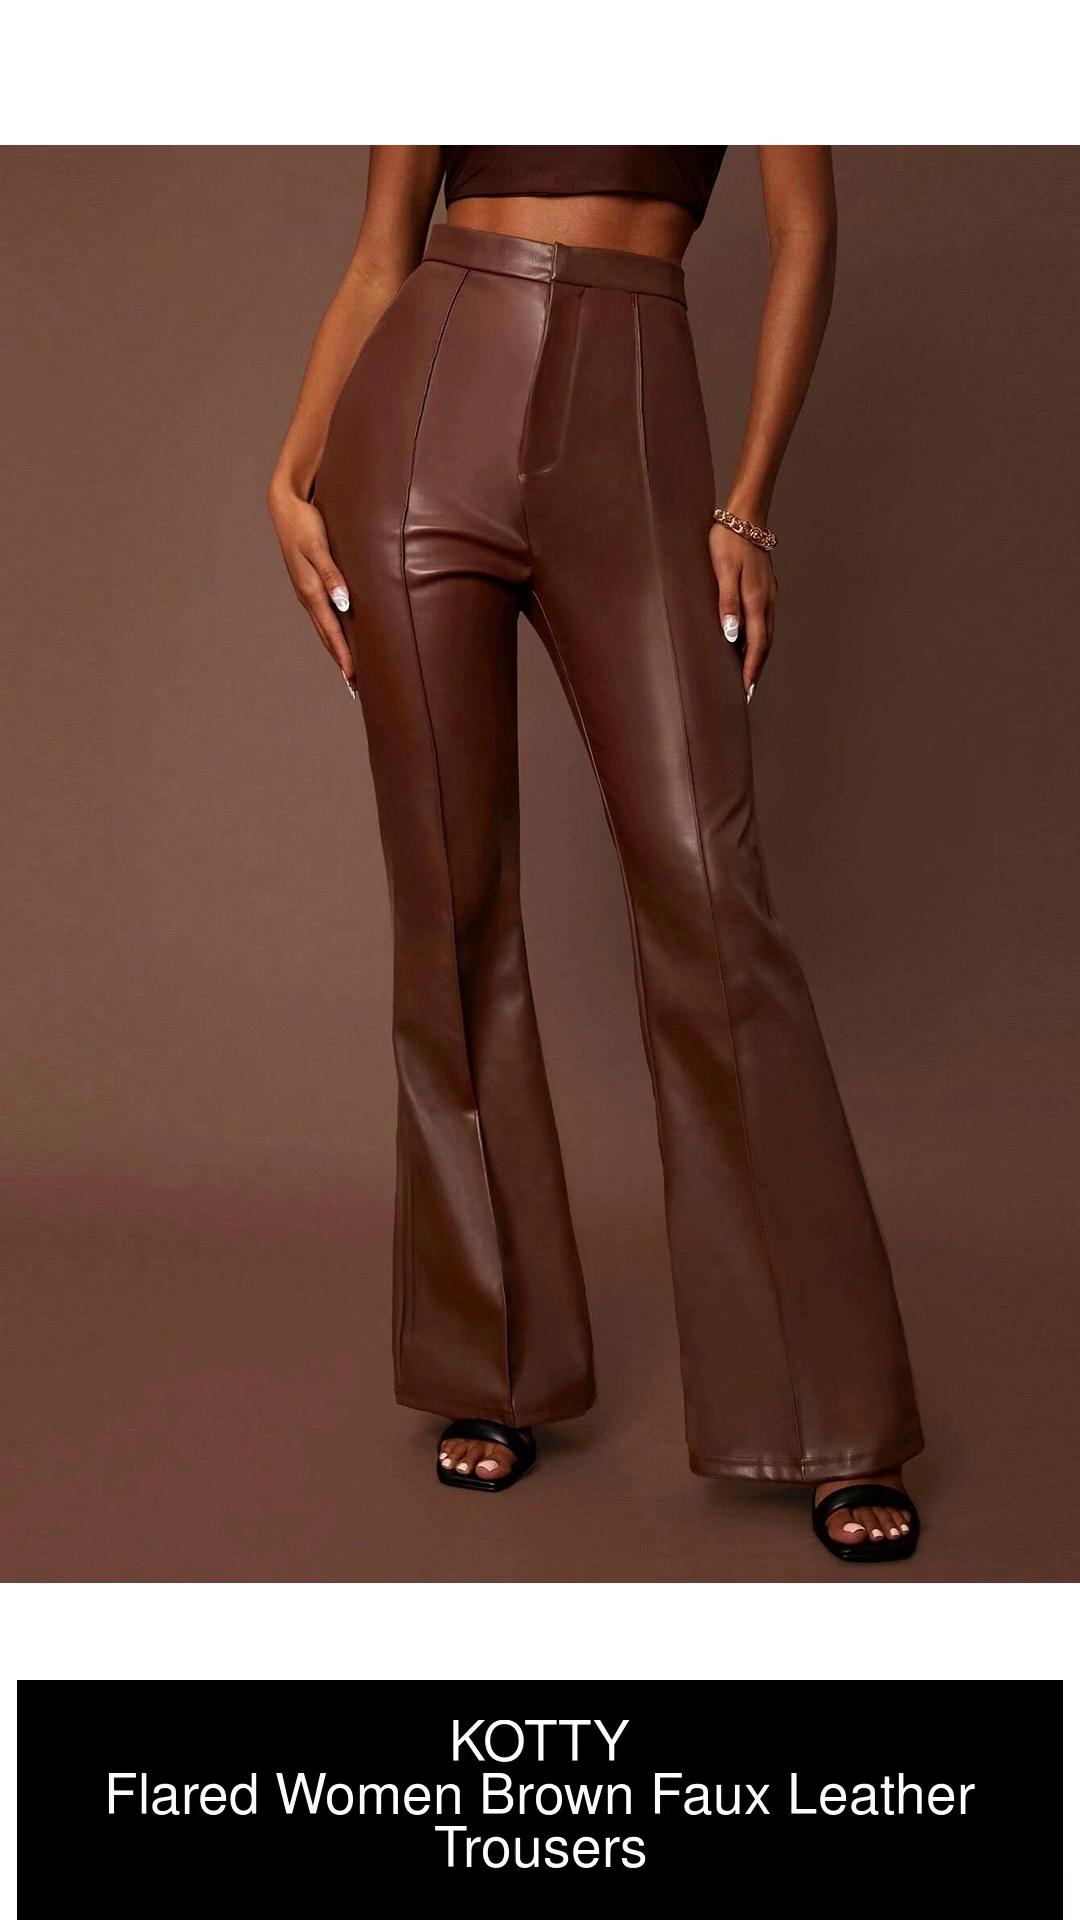 Tie Waist Stud Skinny Leather Pants  China PU Leather Pants and Ladies  Leather Pants price  MadeinChinacom